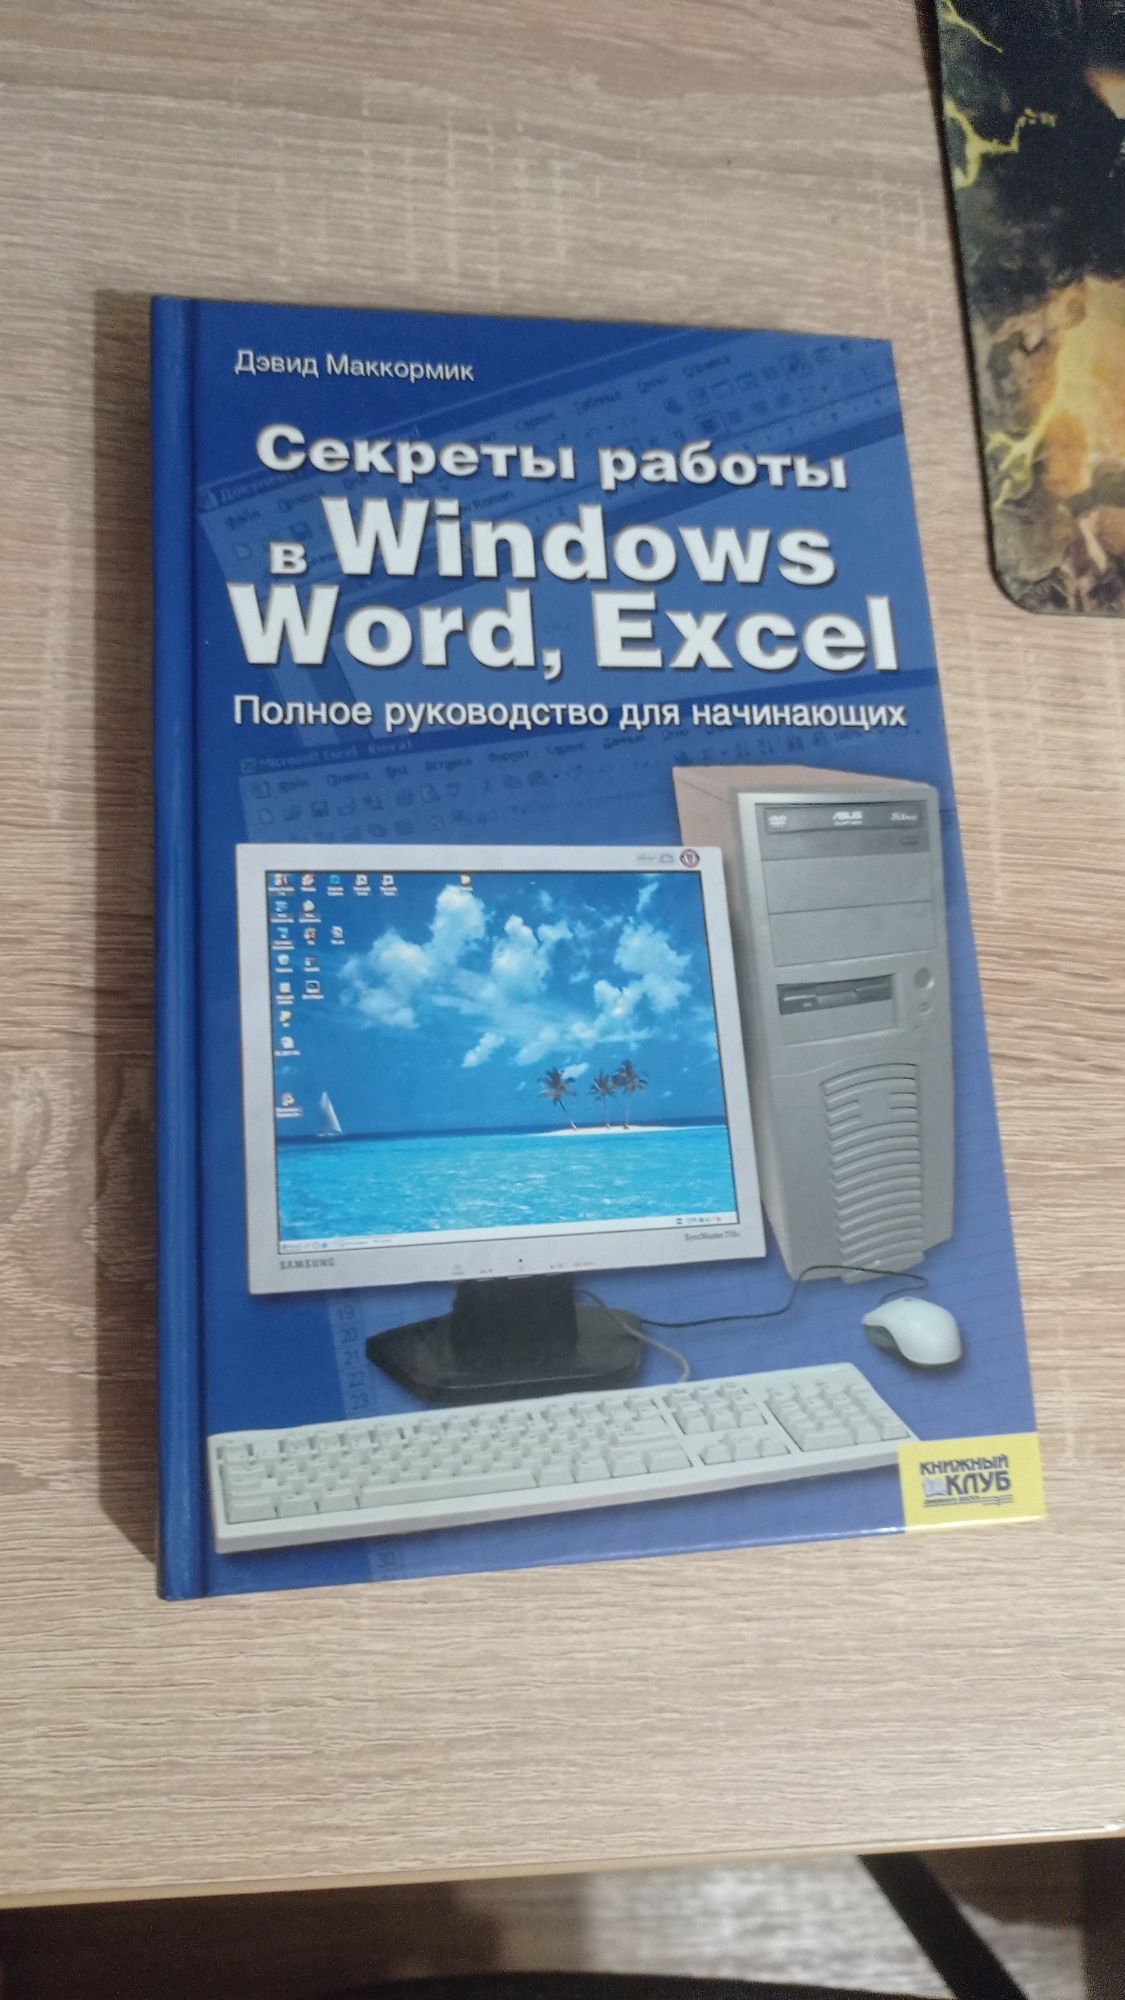 Секреты работы в Windows, Word, Excel